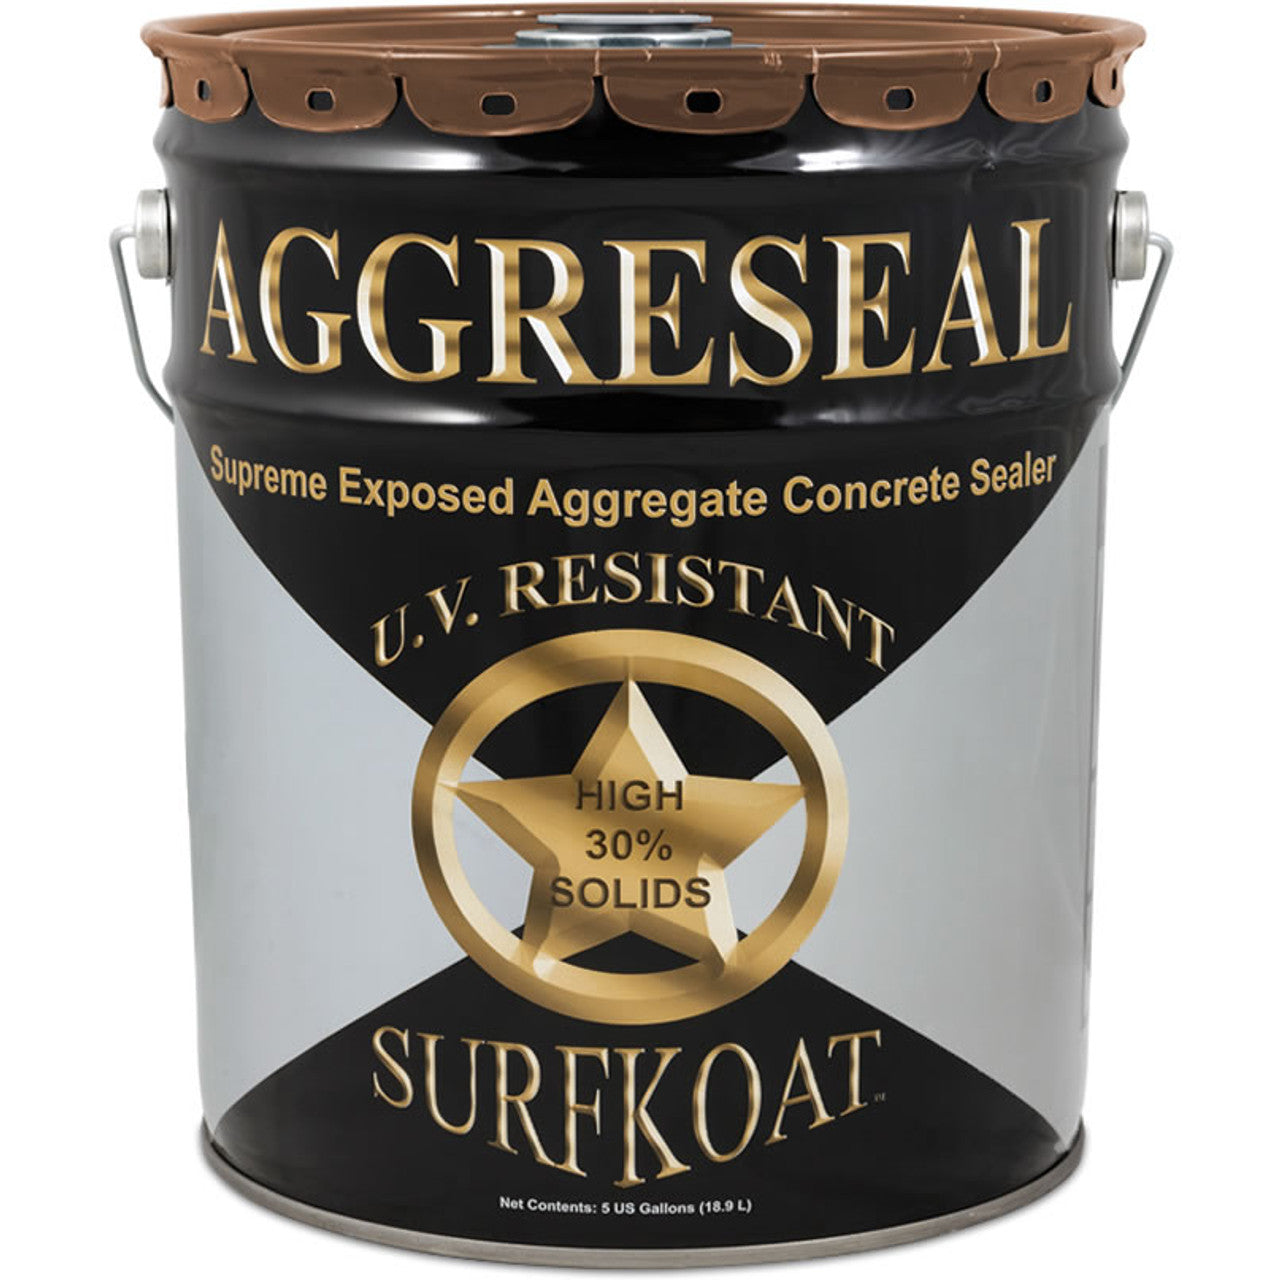 Surfkoat Aggreseal Supreme Brown 350 VOC 5 Gallon